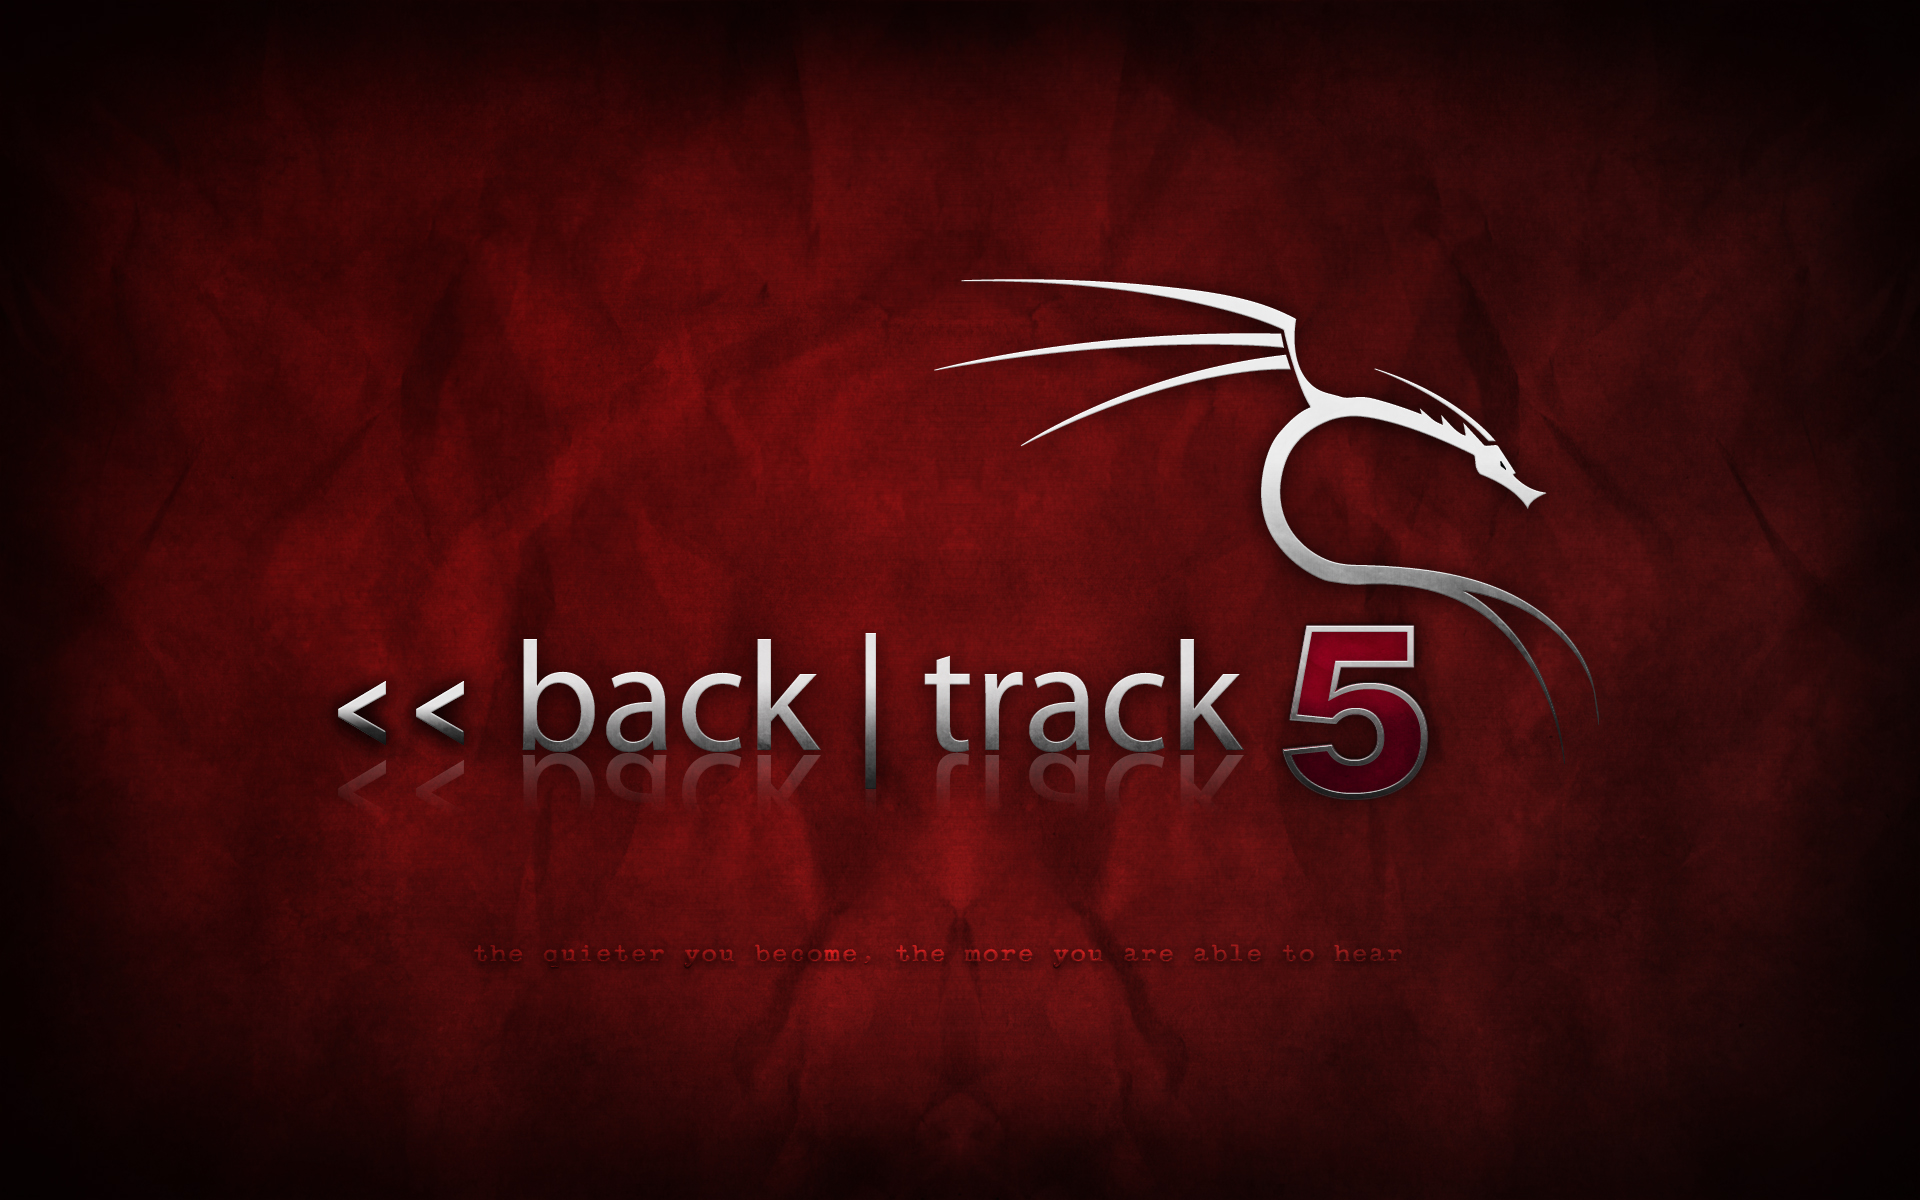 backtrack-5.png